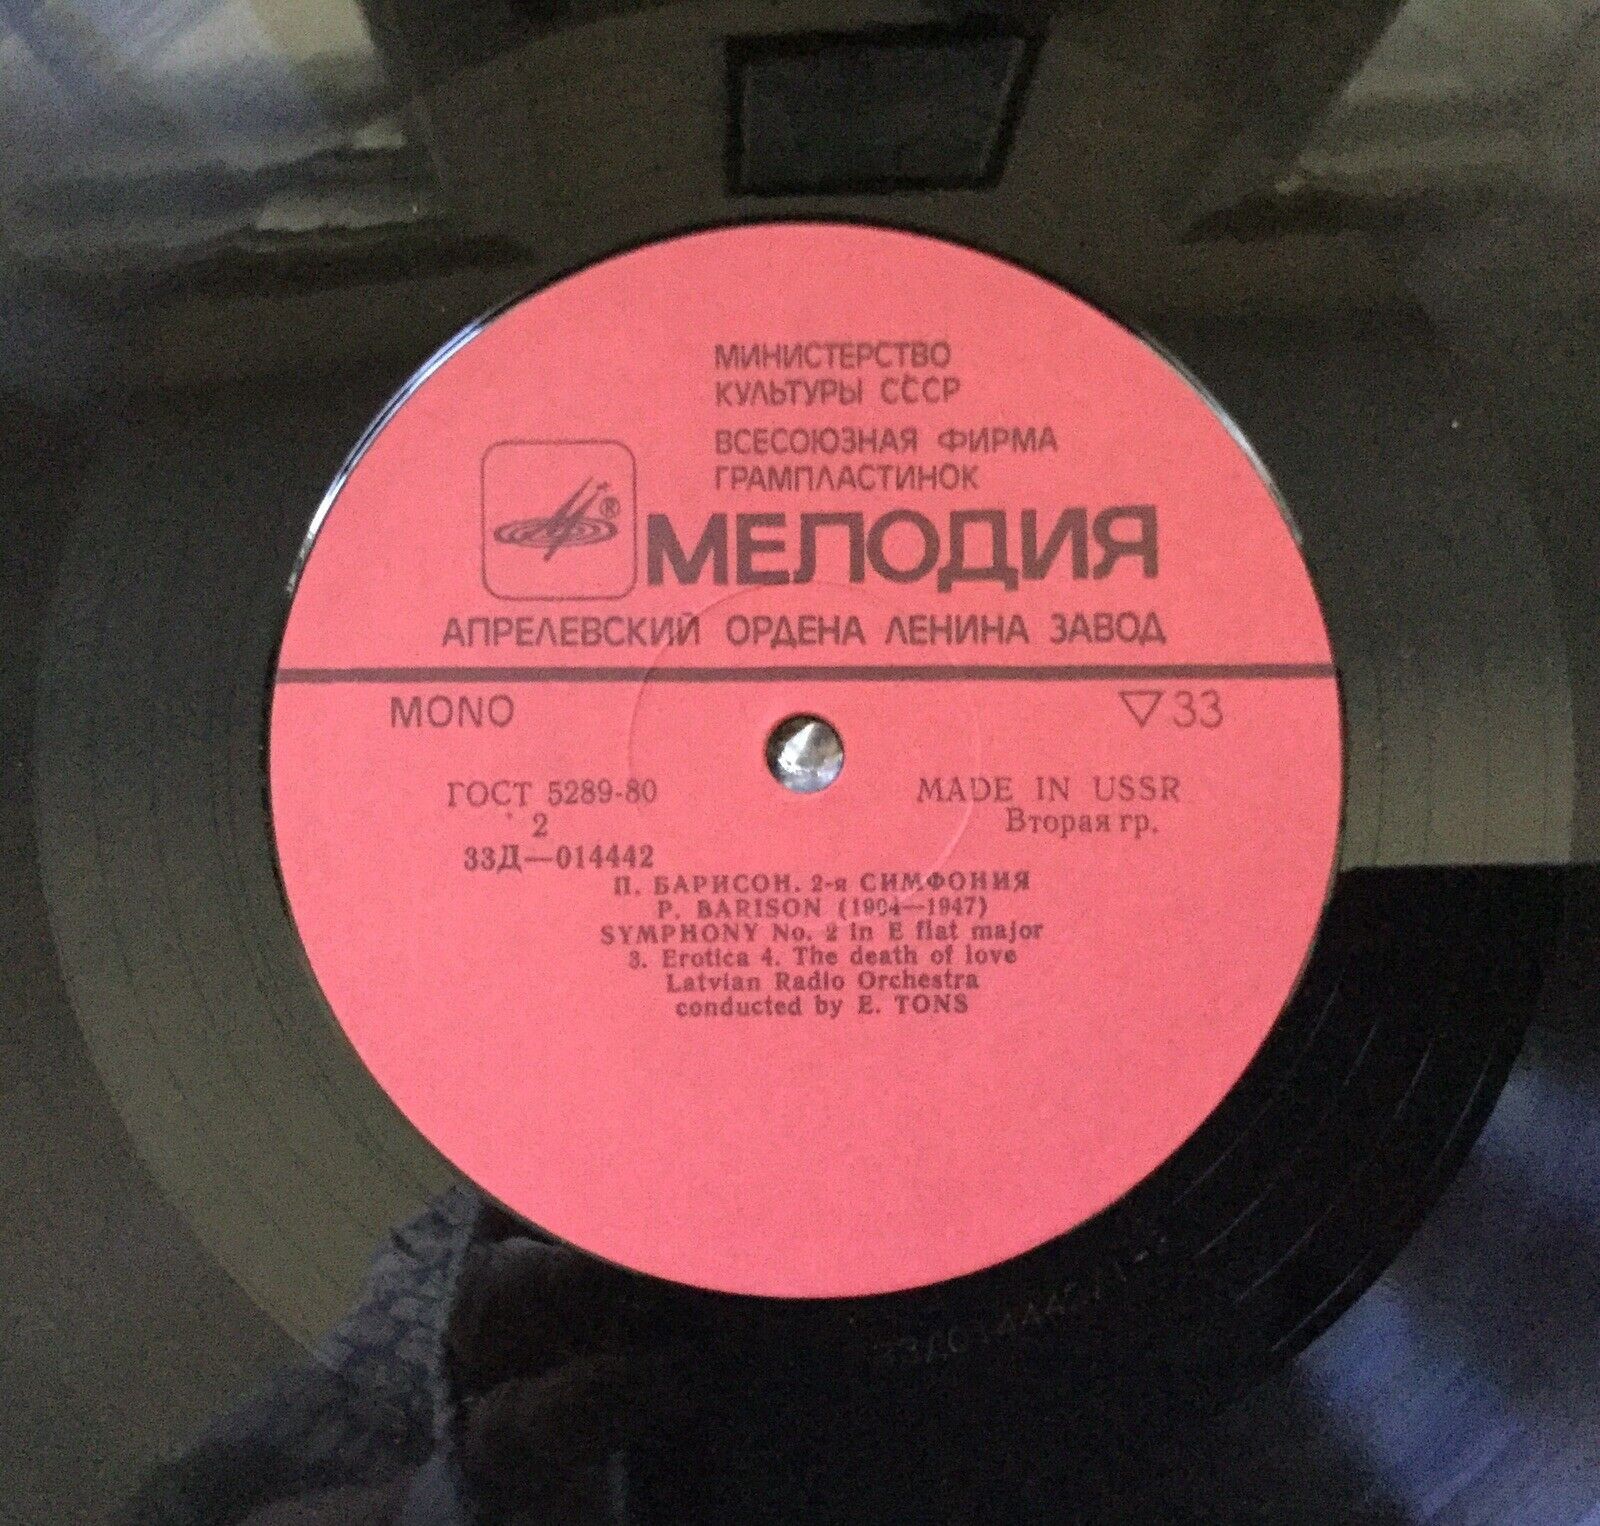 Петерис БАРИСОН (1904—1947): Симфония № 2 ми-бемоль мажор